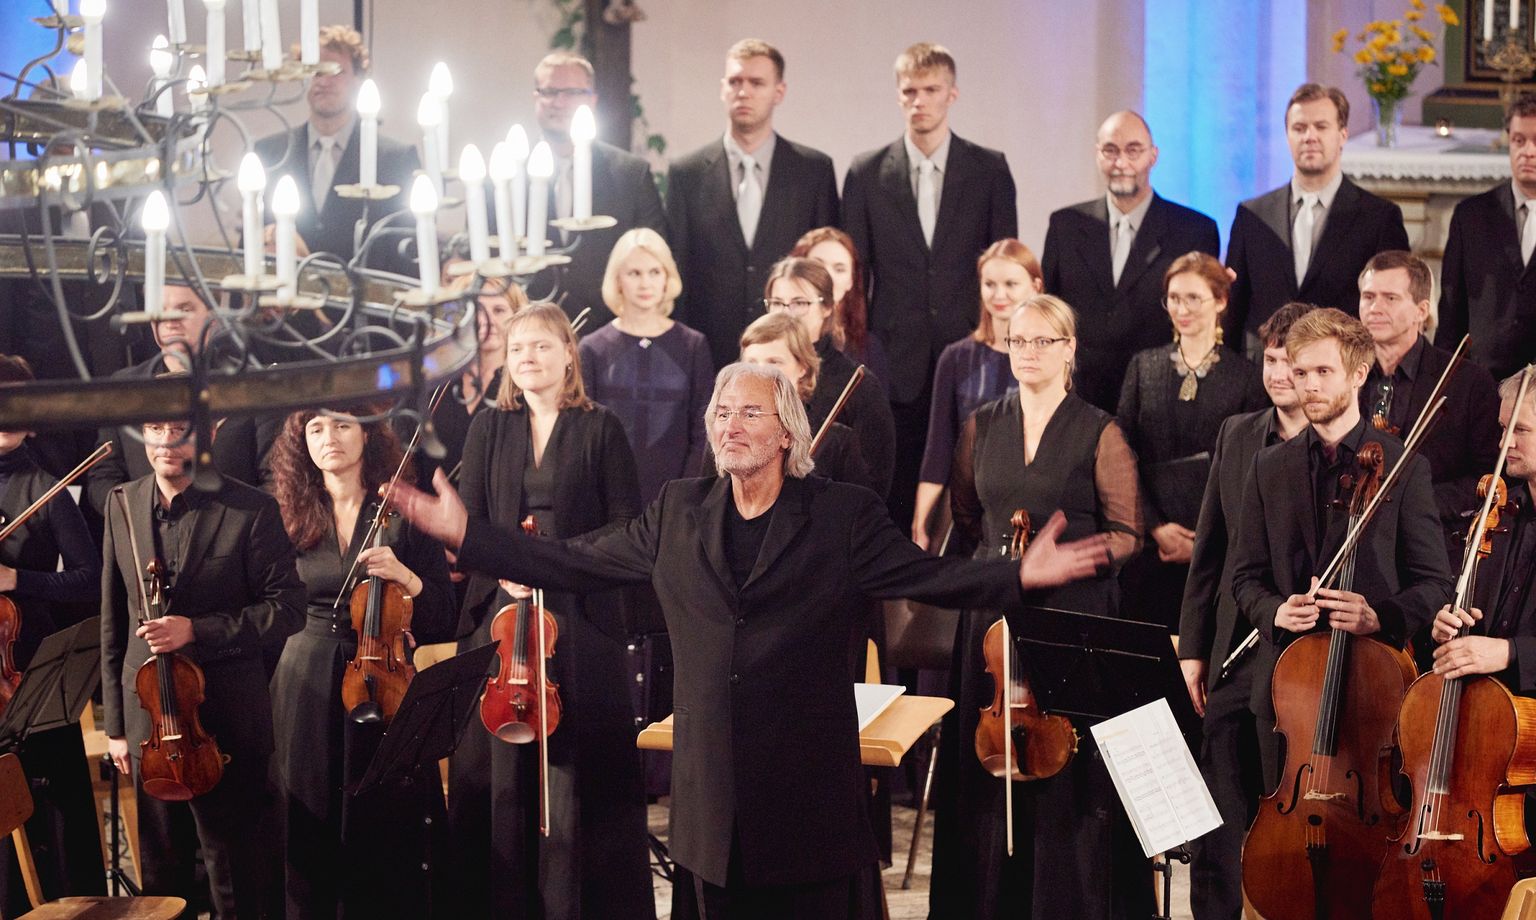 Dirigent Tõnu Kaljuste ning osa Tallinna kammerorkestrist ja Eesti filharmoonia kammerkoorist.